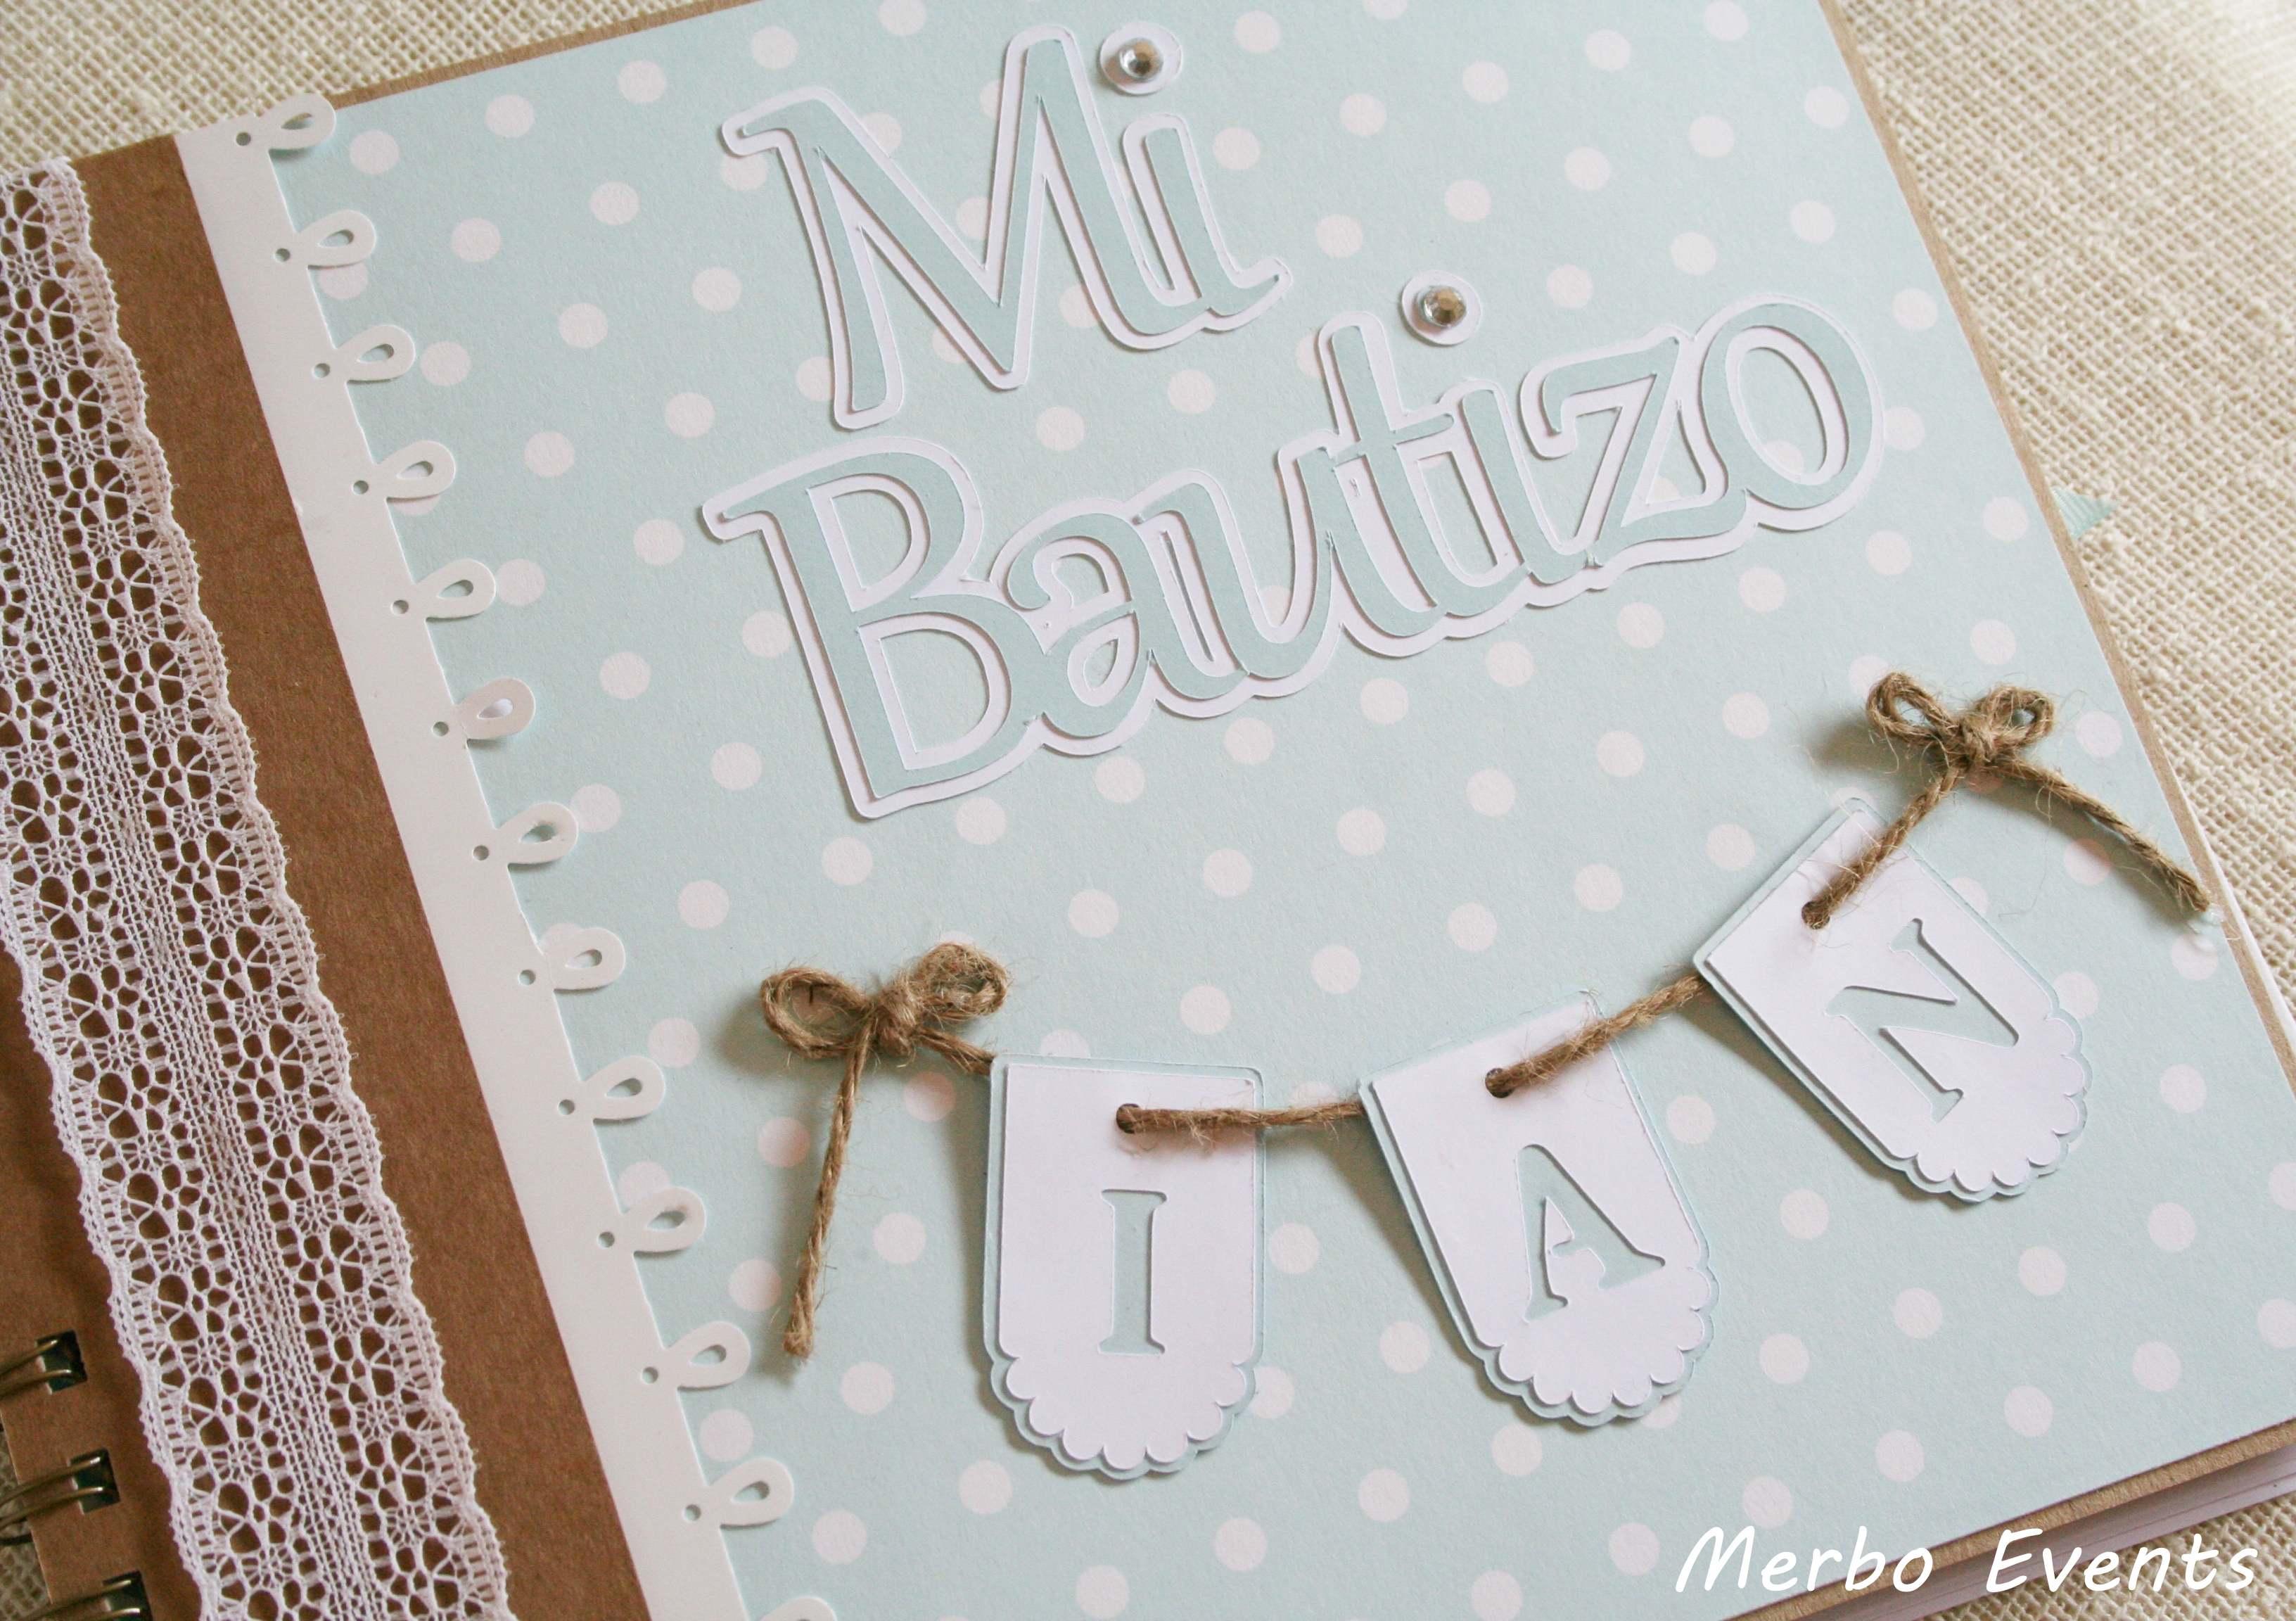 Detalles de Bautizo personalizados, recordatorios, invitaciones, libros